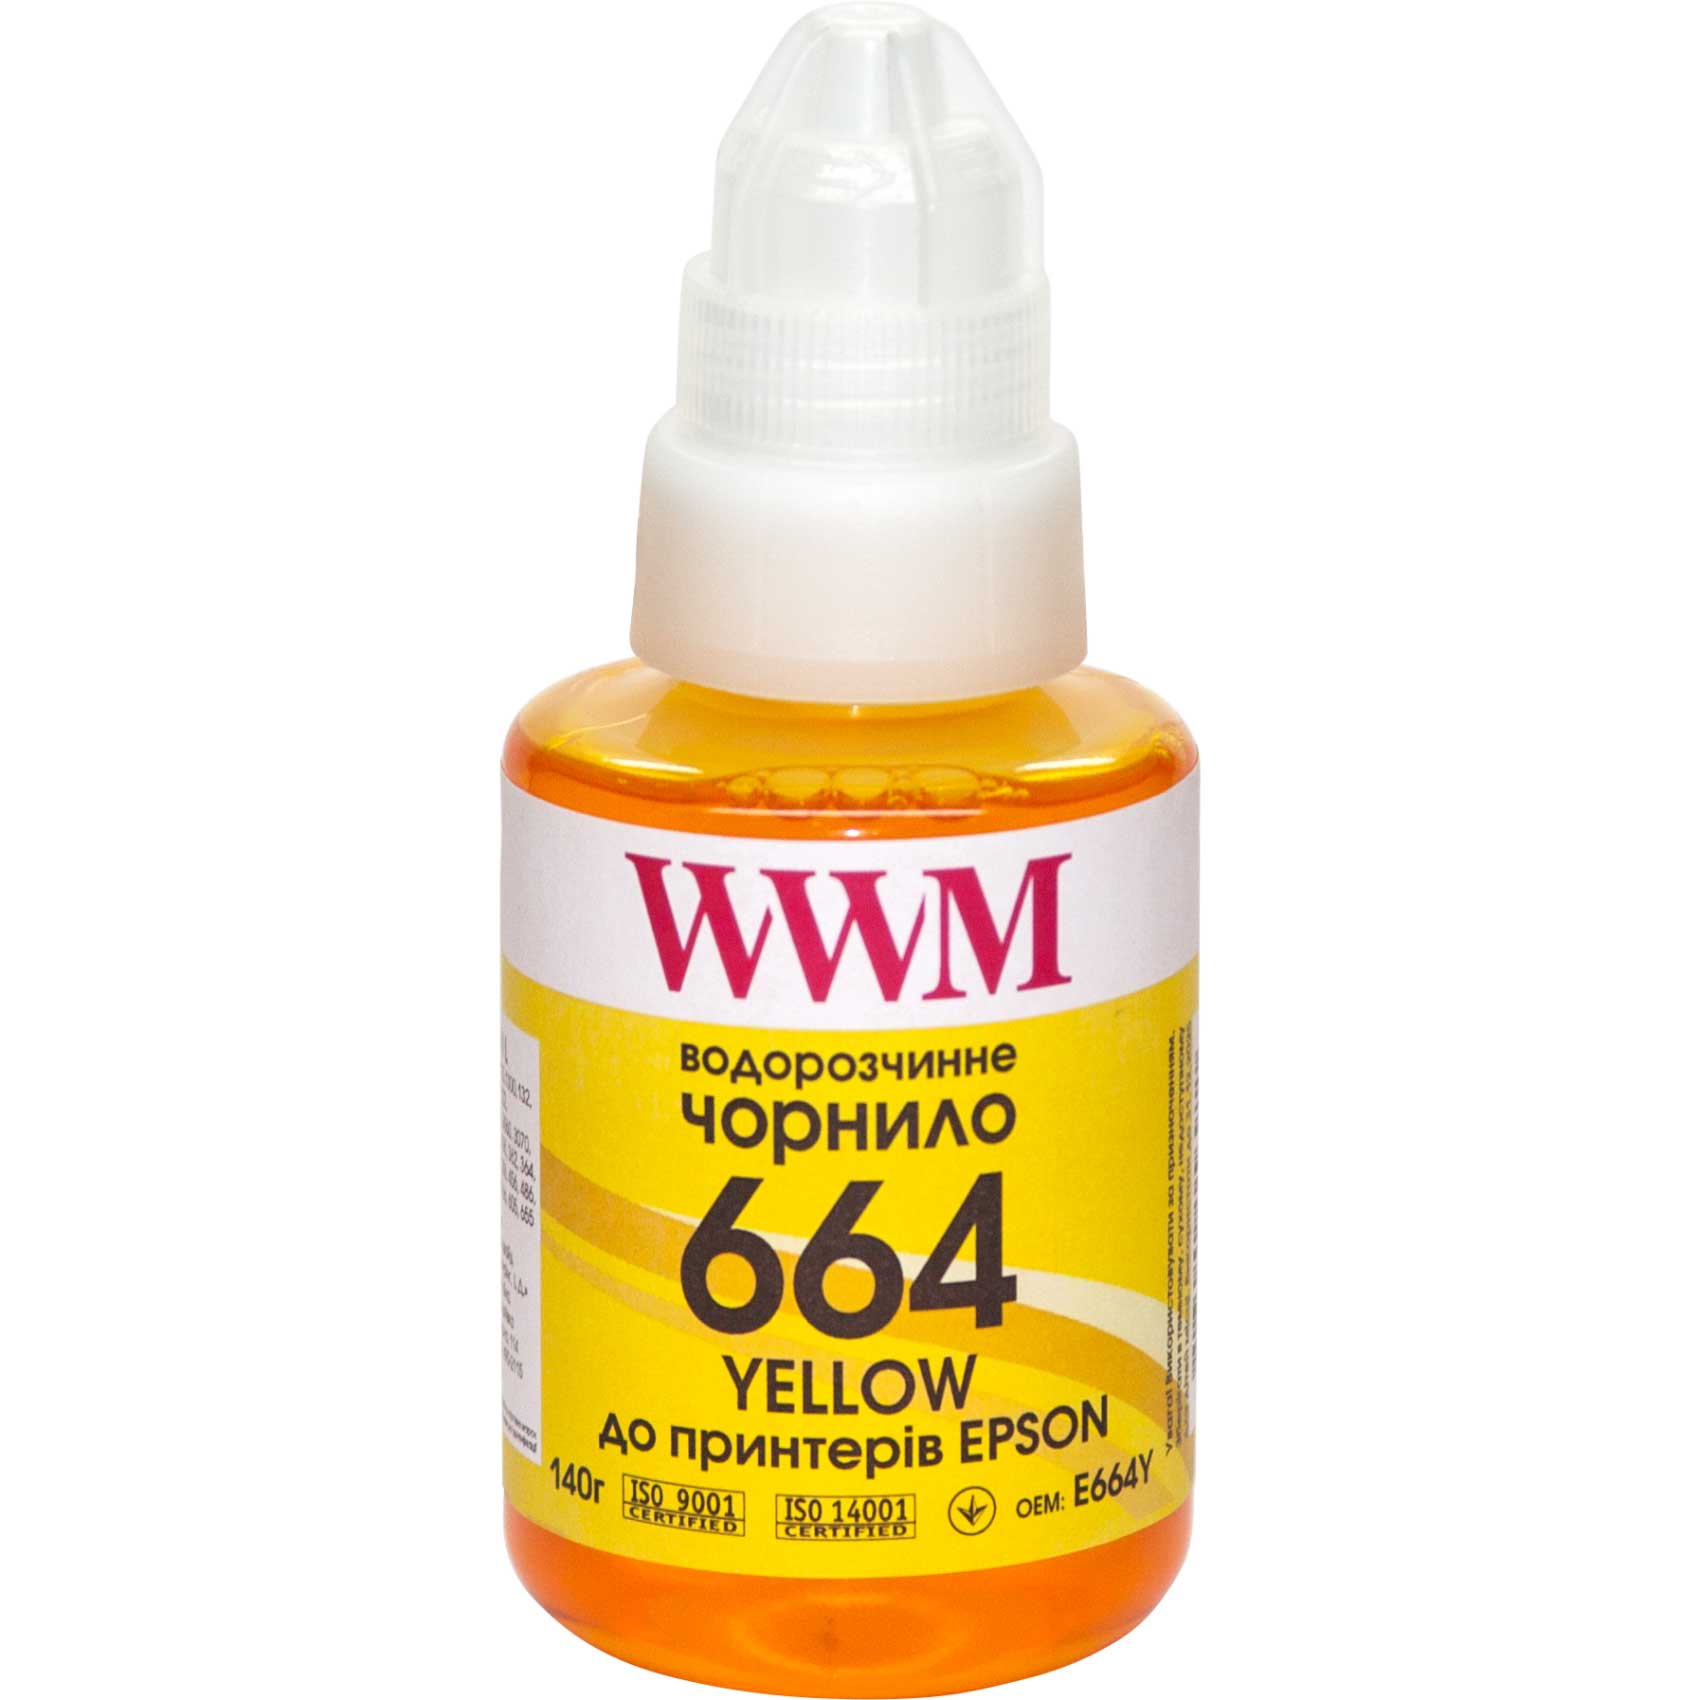 Чорнило WWM 664 для Epson L100/200/L300/L500 (Yellow) 140ml | Купити в інтернет магазині